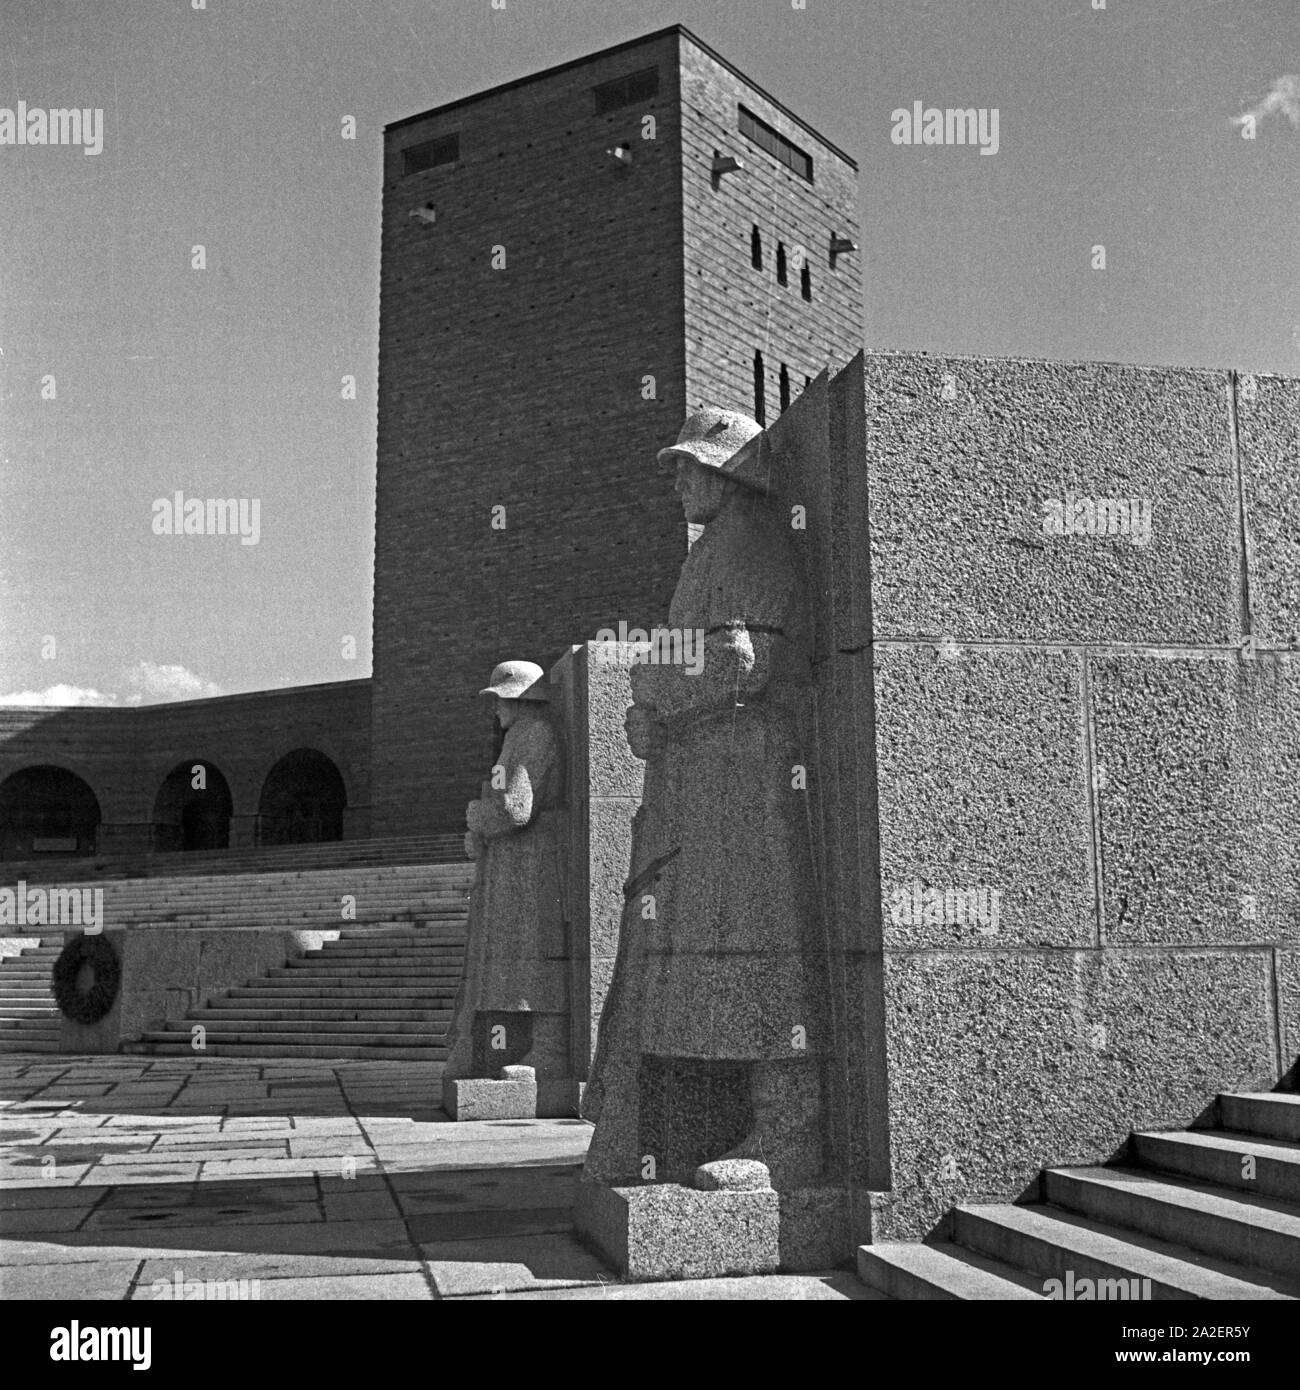 Innenhof im Tannenberg Denkmal bei Hohenstein in Ostpreußen, Deutschland 1930er Jahre. Cortile interno a Tannenberg monumento vicino a Hohenstein nella Prussia orientale, Germania 1930s. Foto Stock